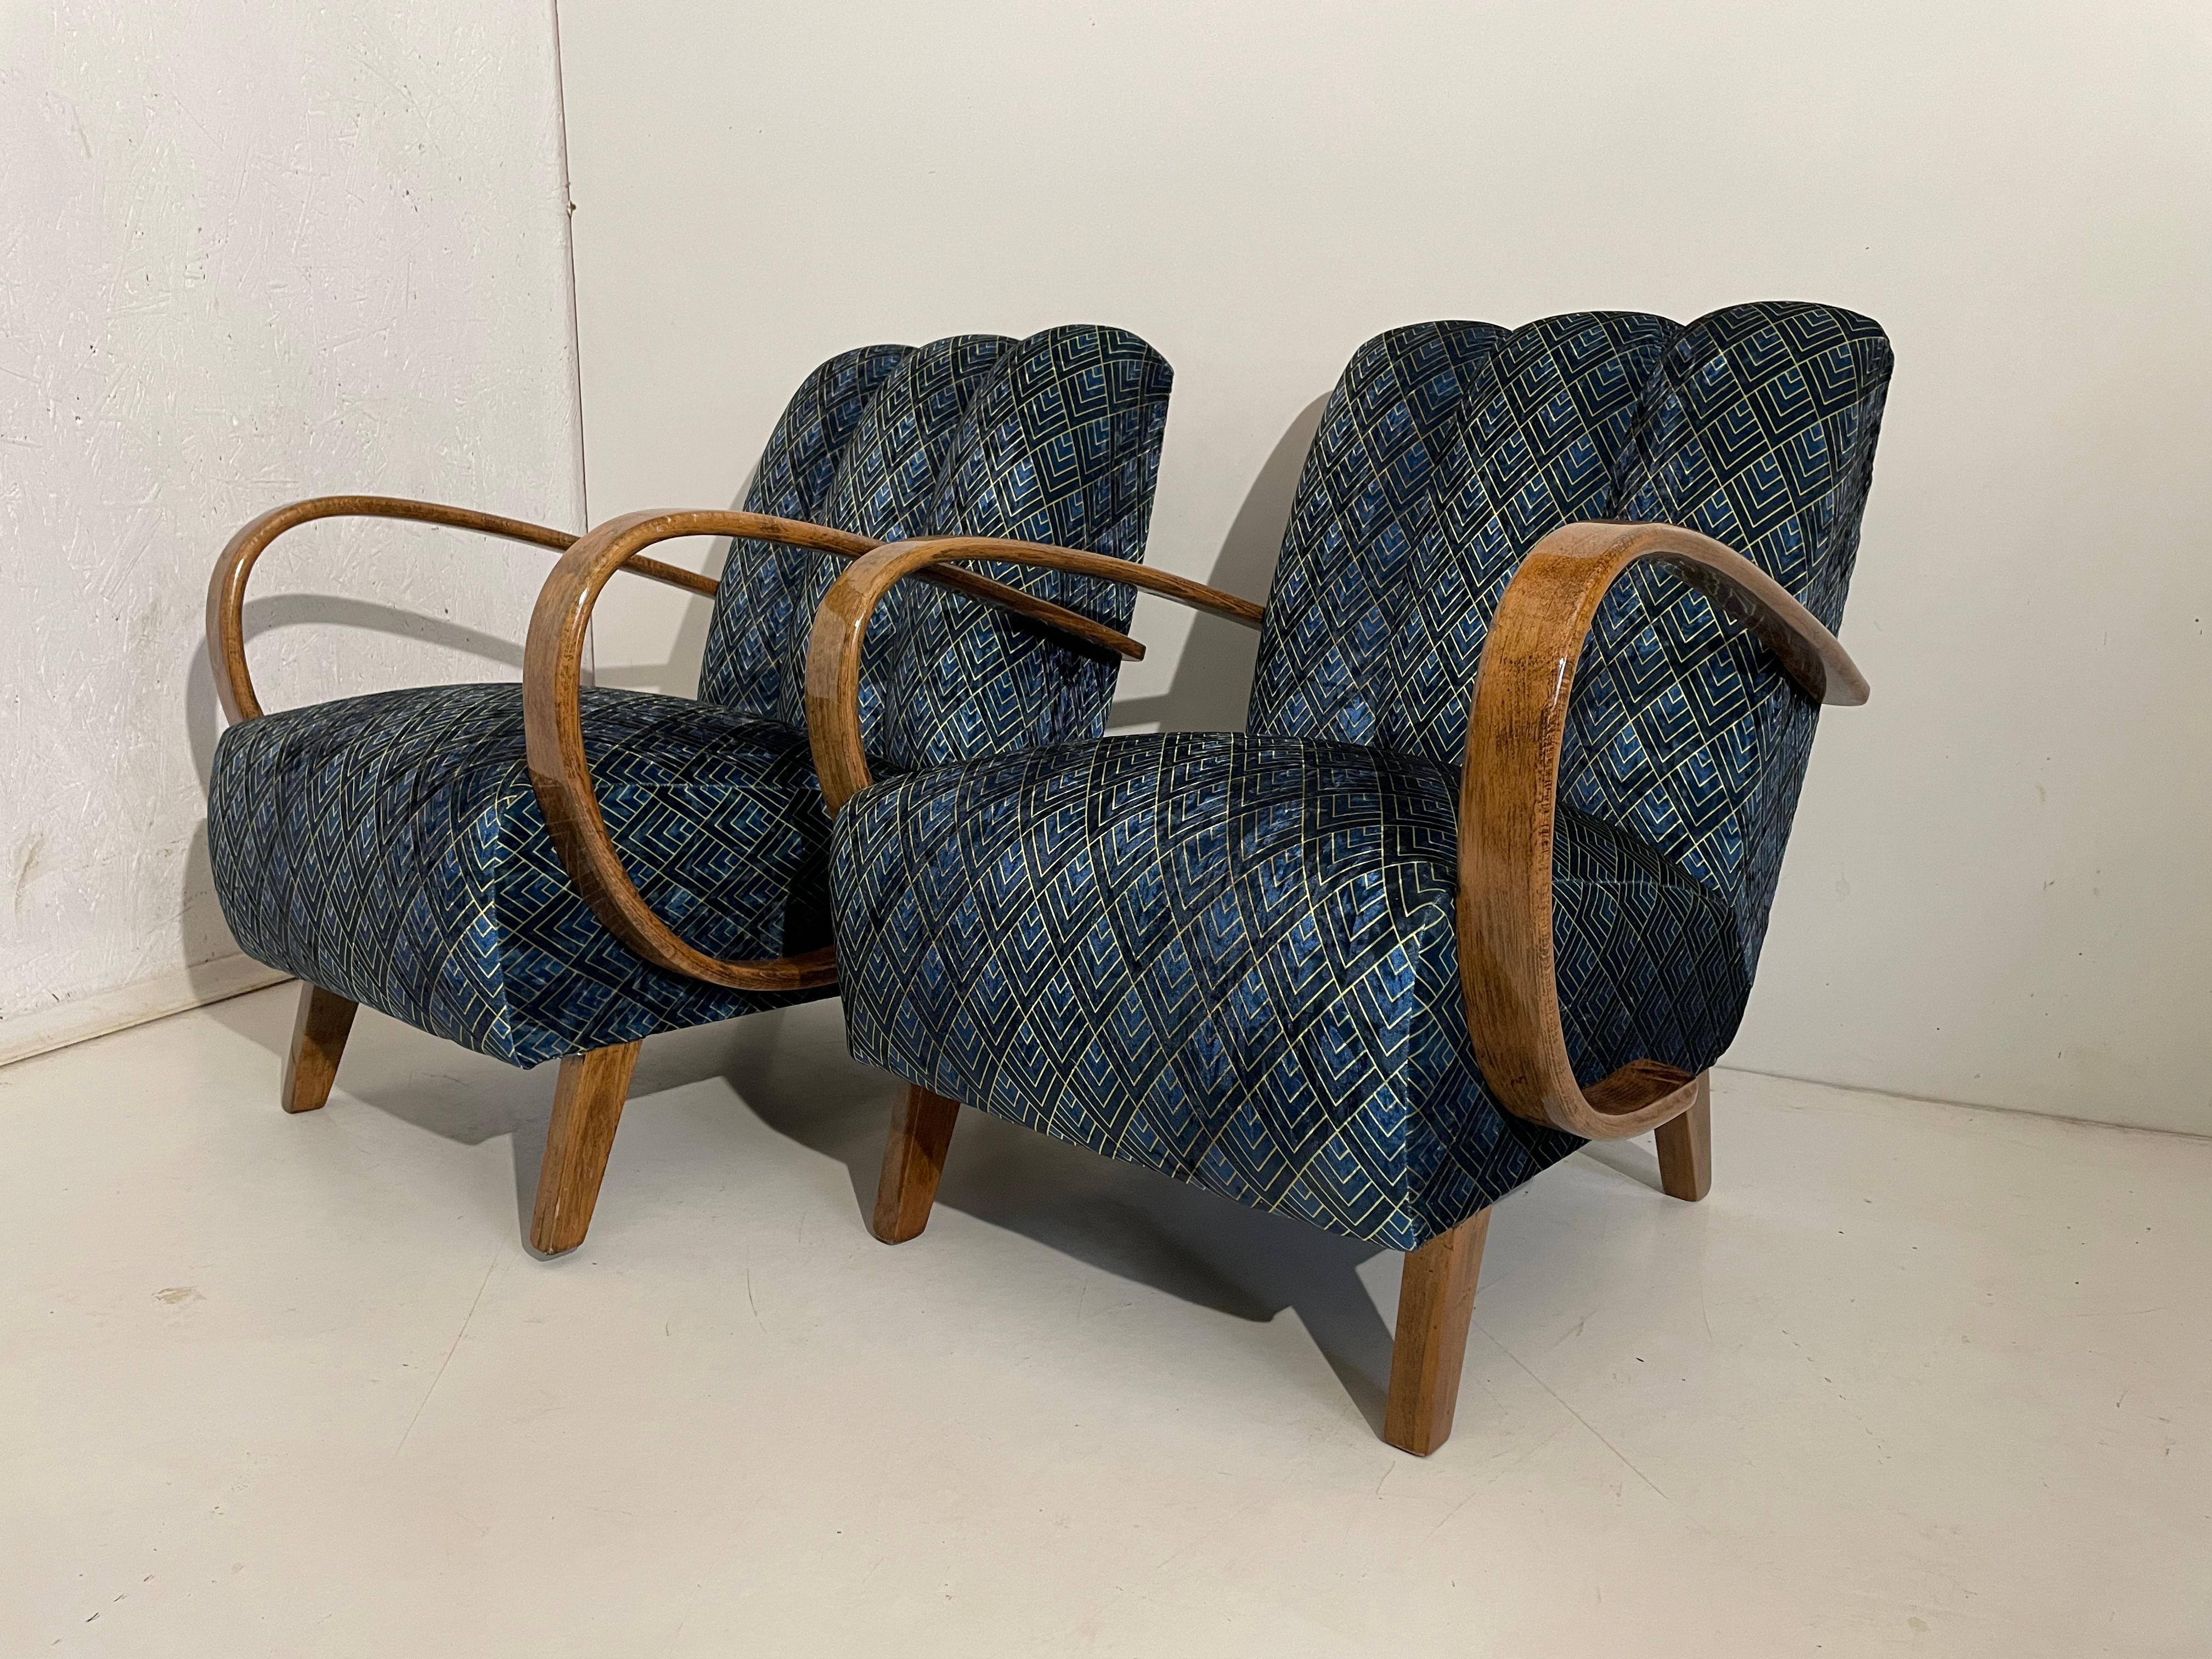 2 Art-Déco-Sessel von 1940, Tschechische Republik.
Entworfen von dem berühmten tschechischen Designer Jindrich Halabala, der zu den bedeutendsten Schöpfern der Moderne zählt. Den Höhepunkt seiner Karriere erlebte er in den 1930er und 1940er Jahren,